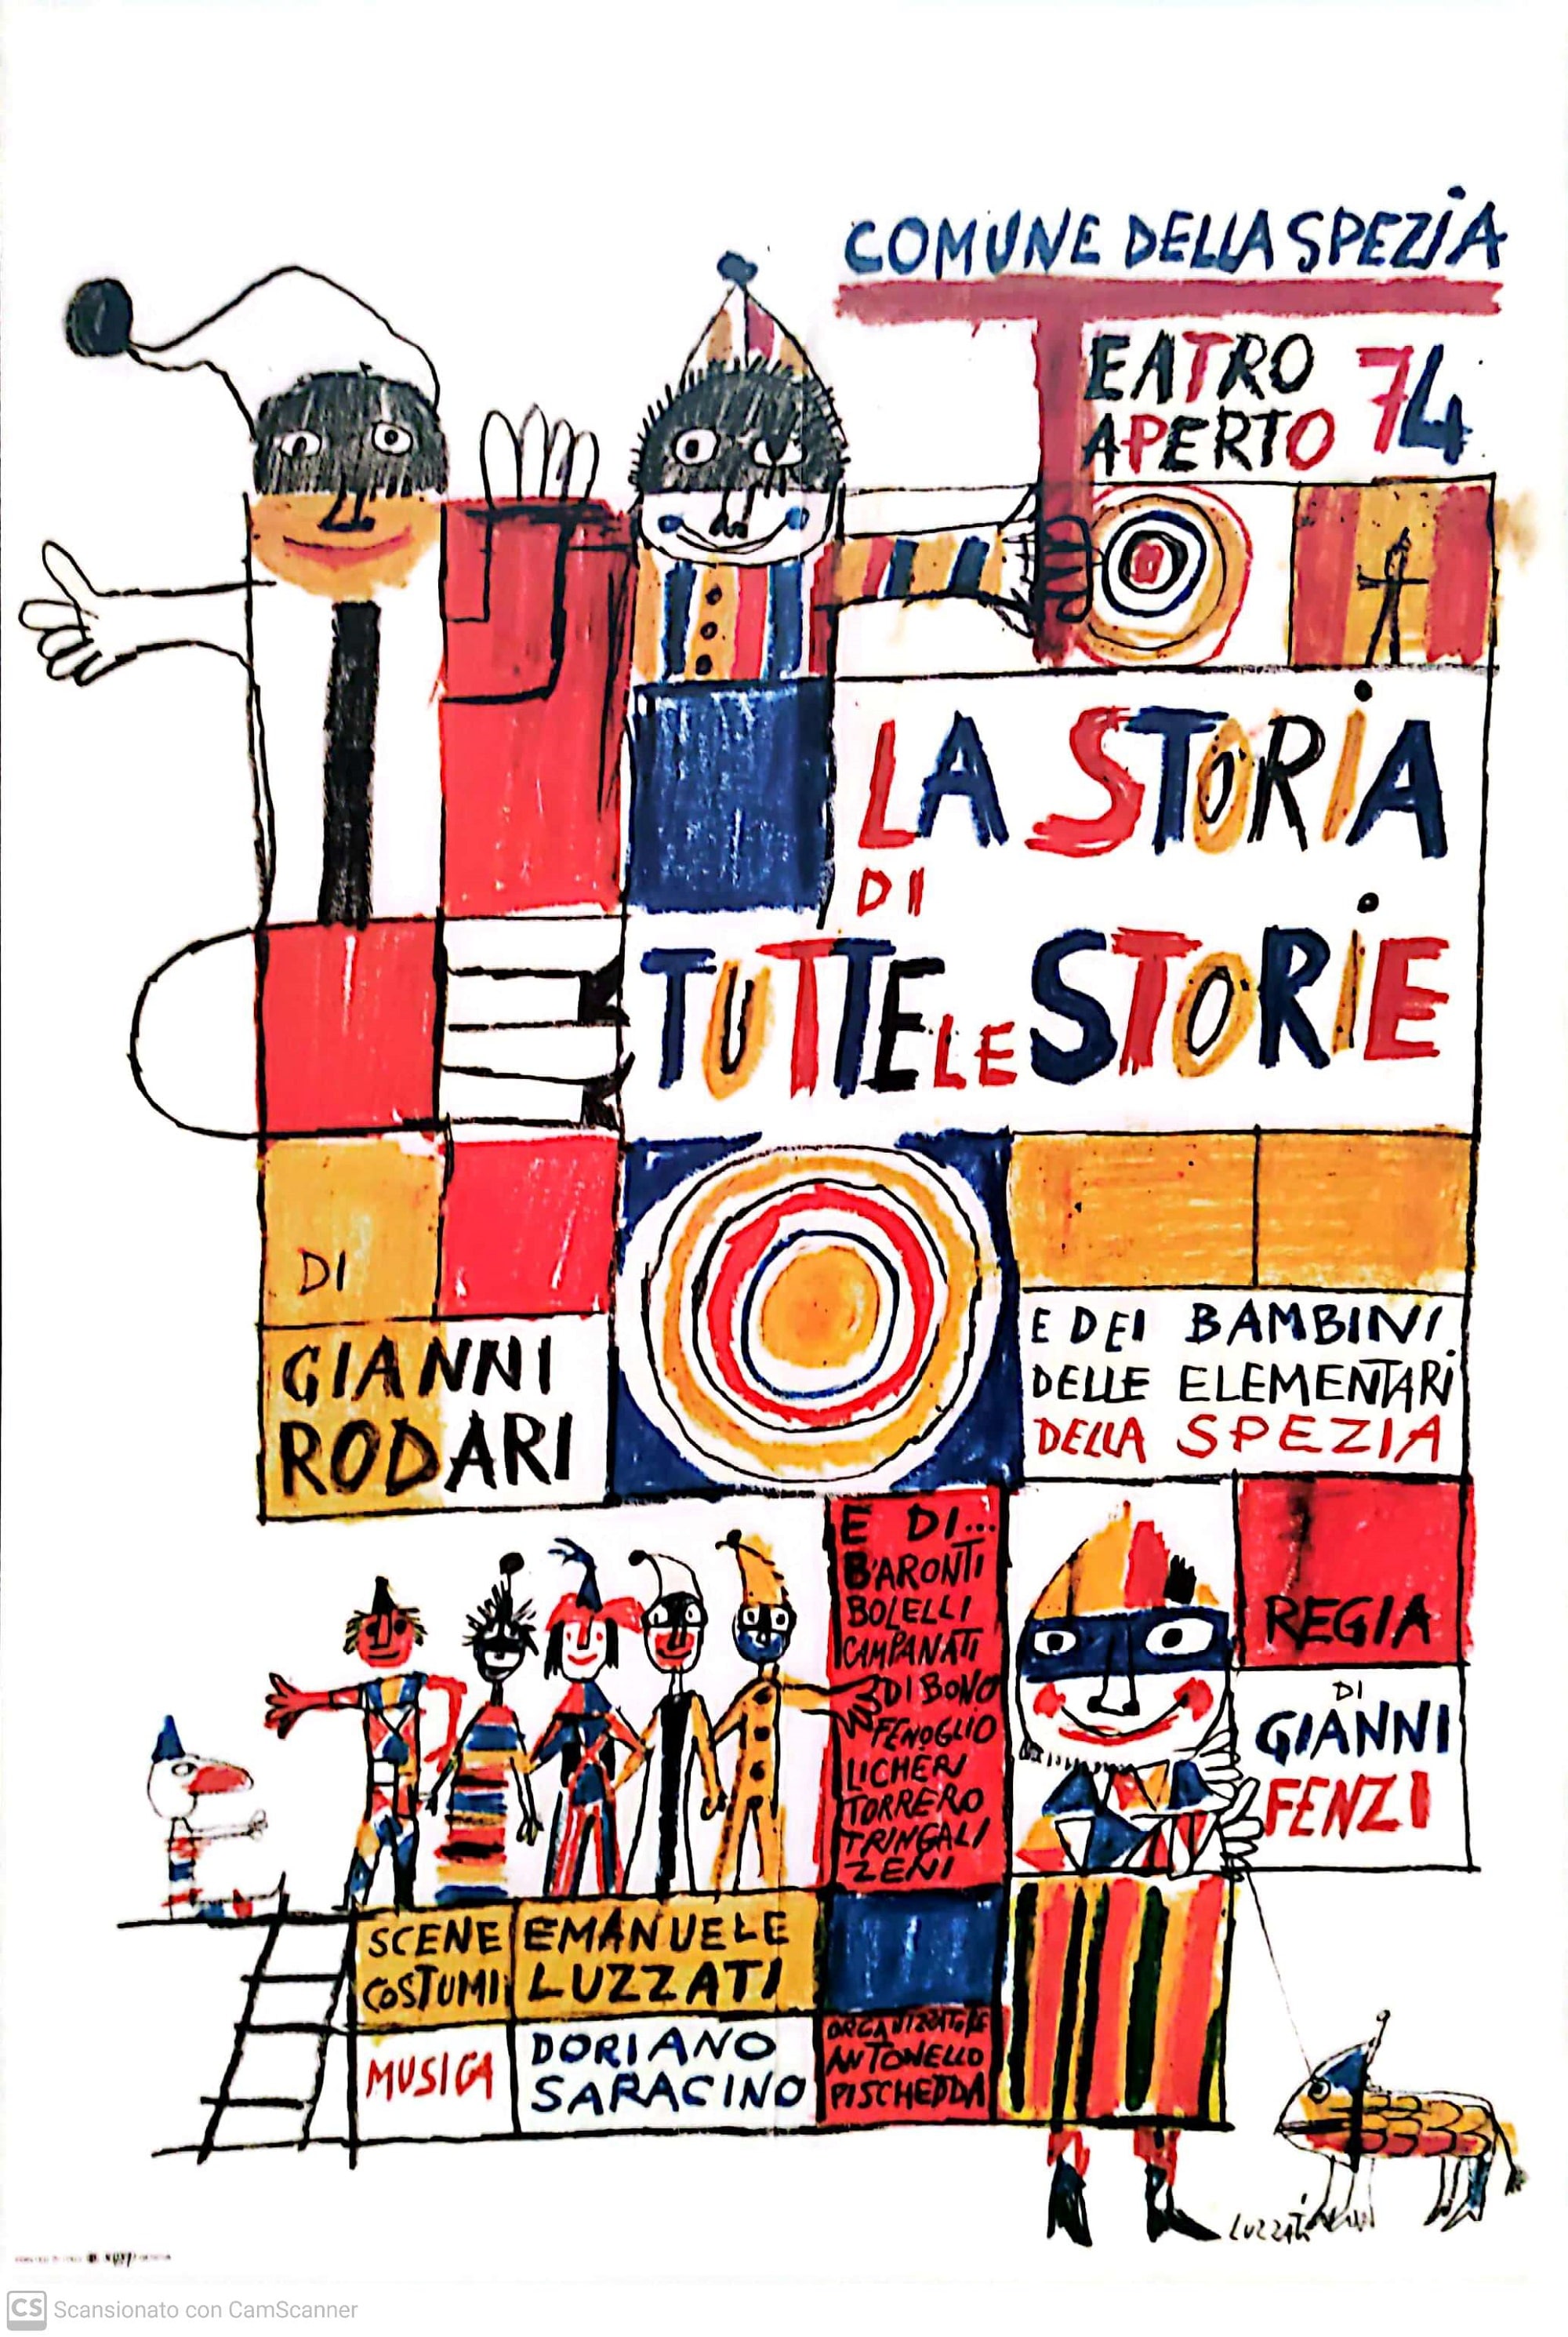 La storia di tutte le storie, Teatro aperto, La Spezia, 1974